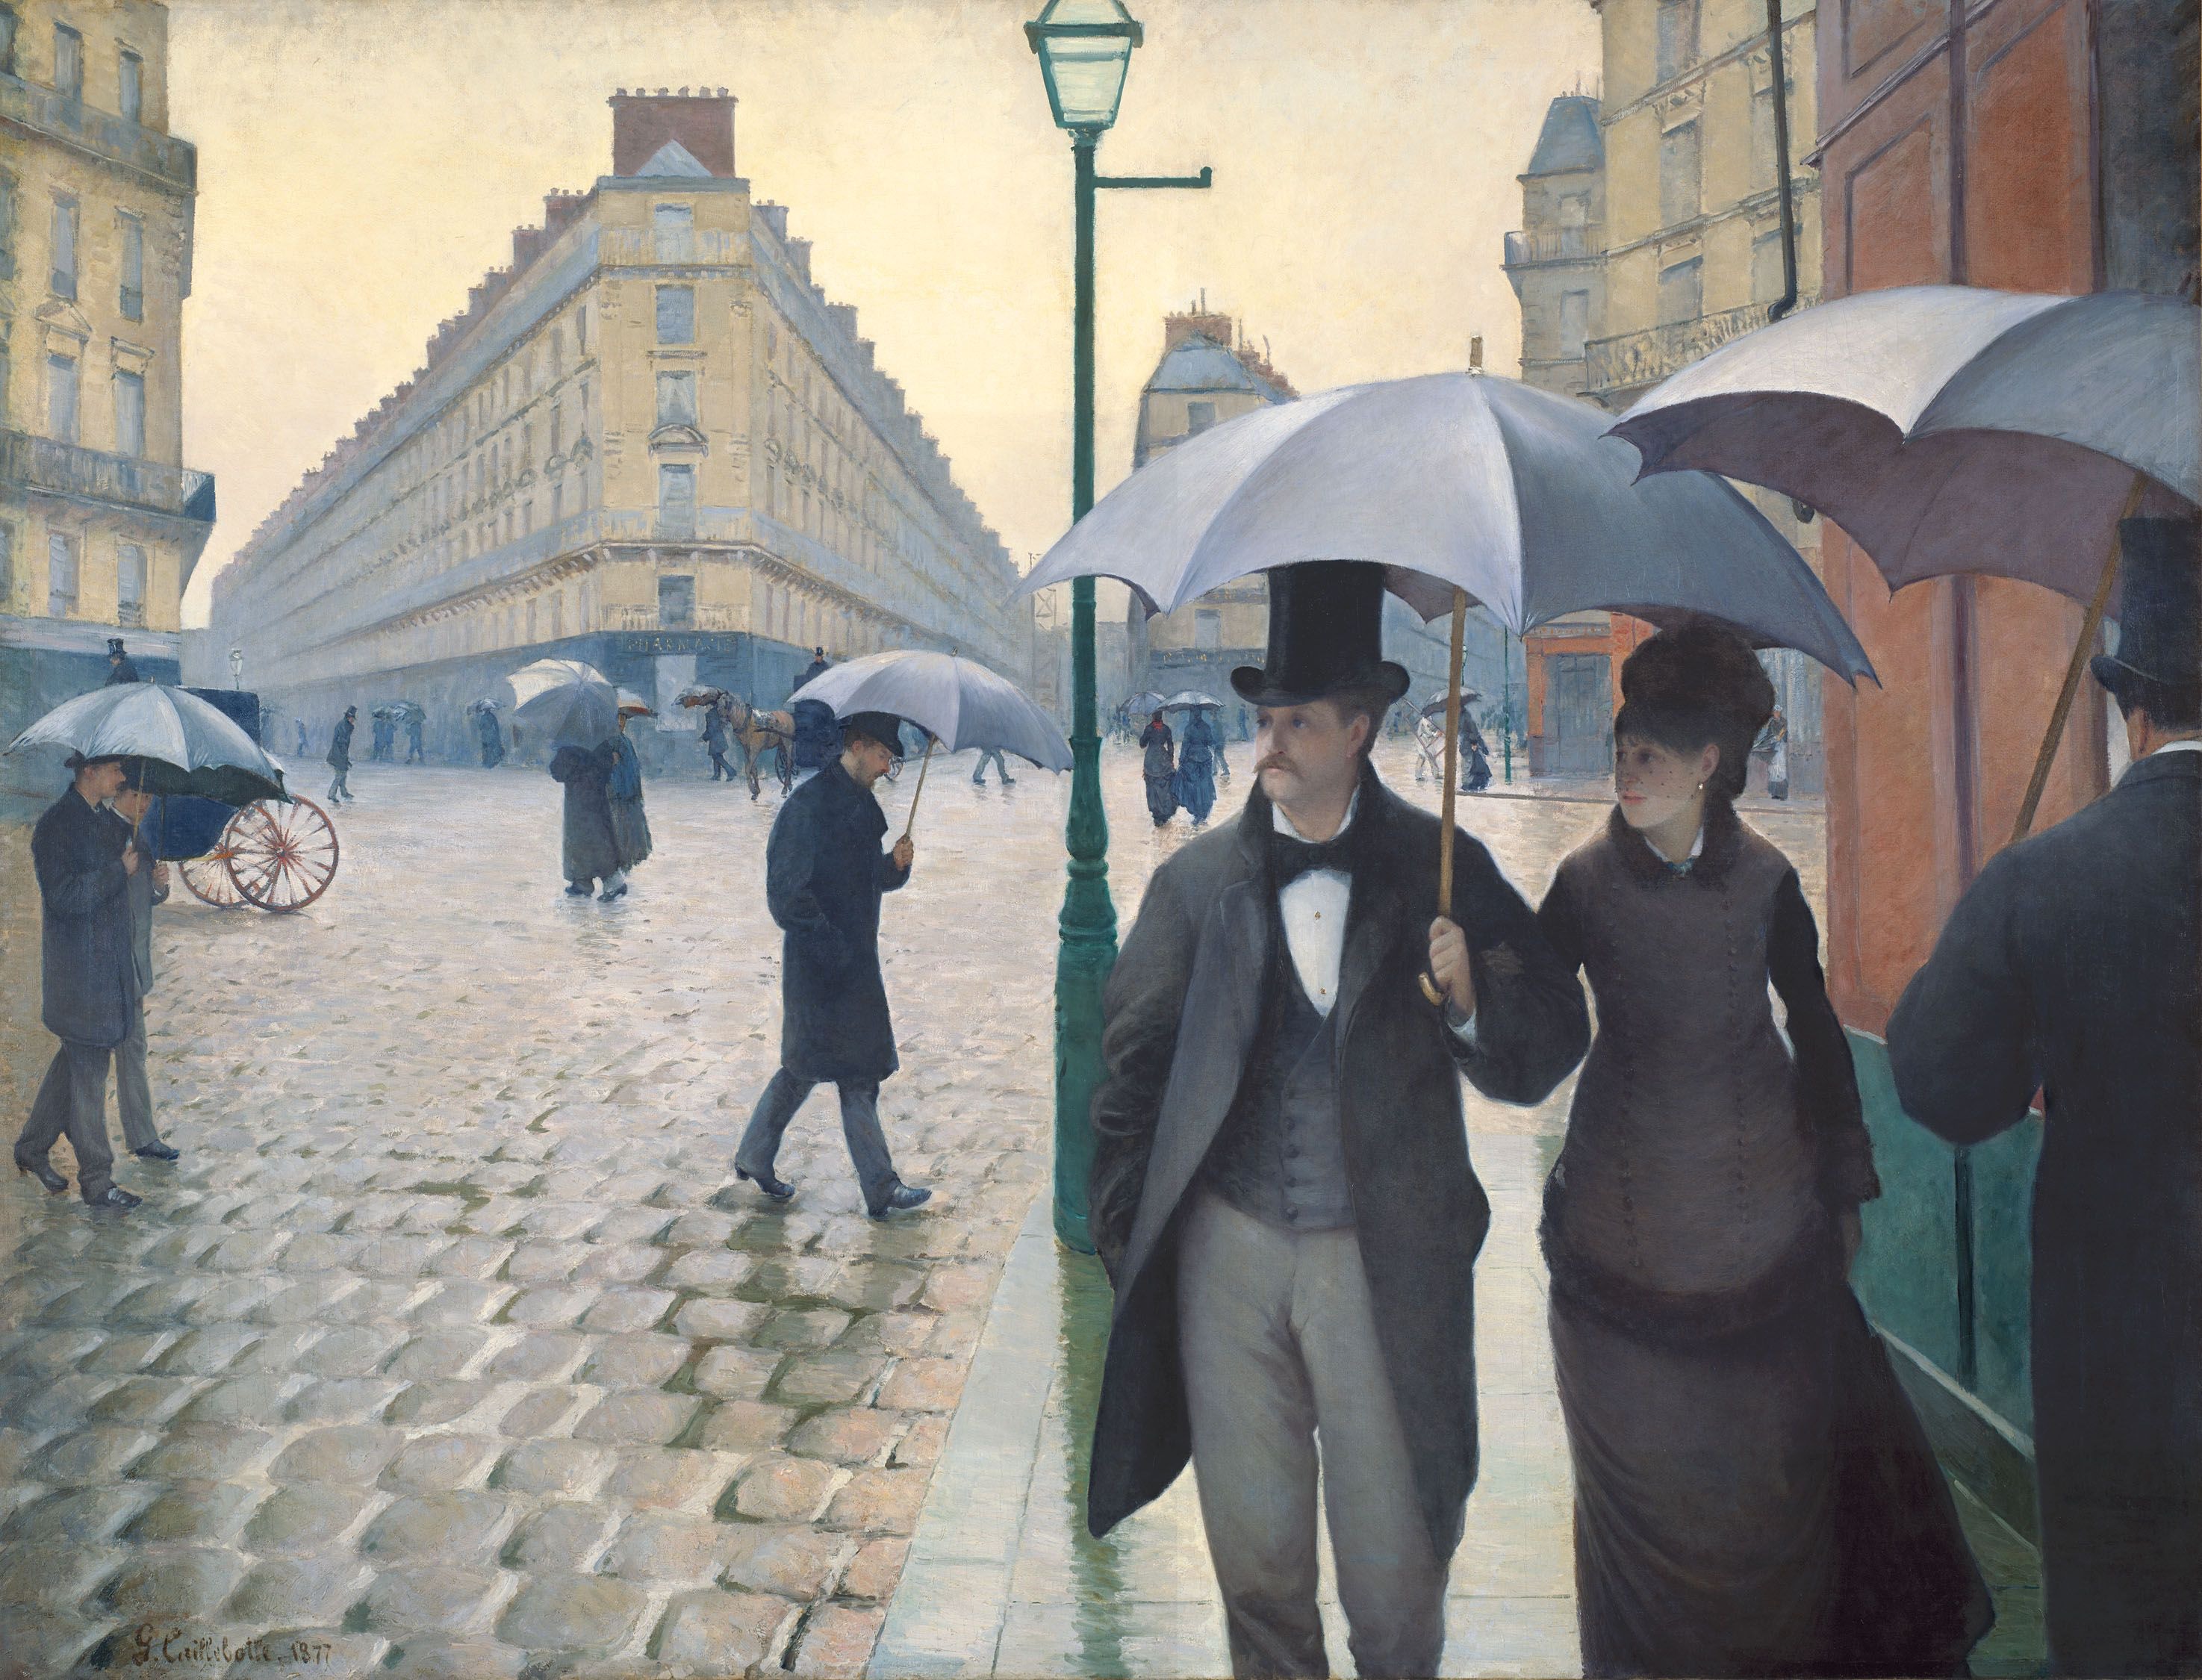 Pařížská ulice; Deštivý den by Gustave Caillebotte - 1877 - 212 cm x 276 cm 